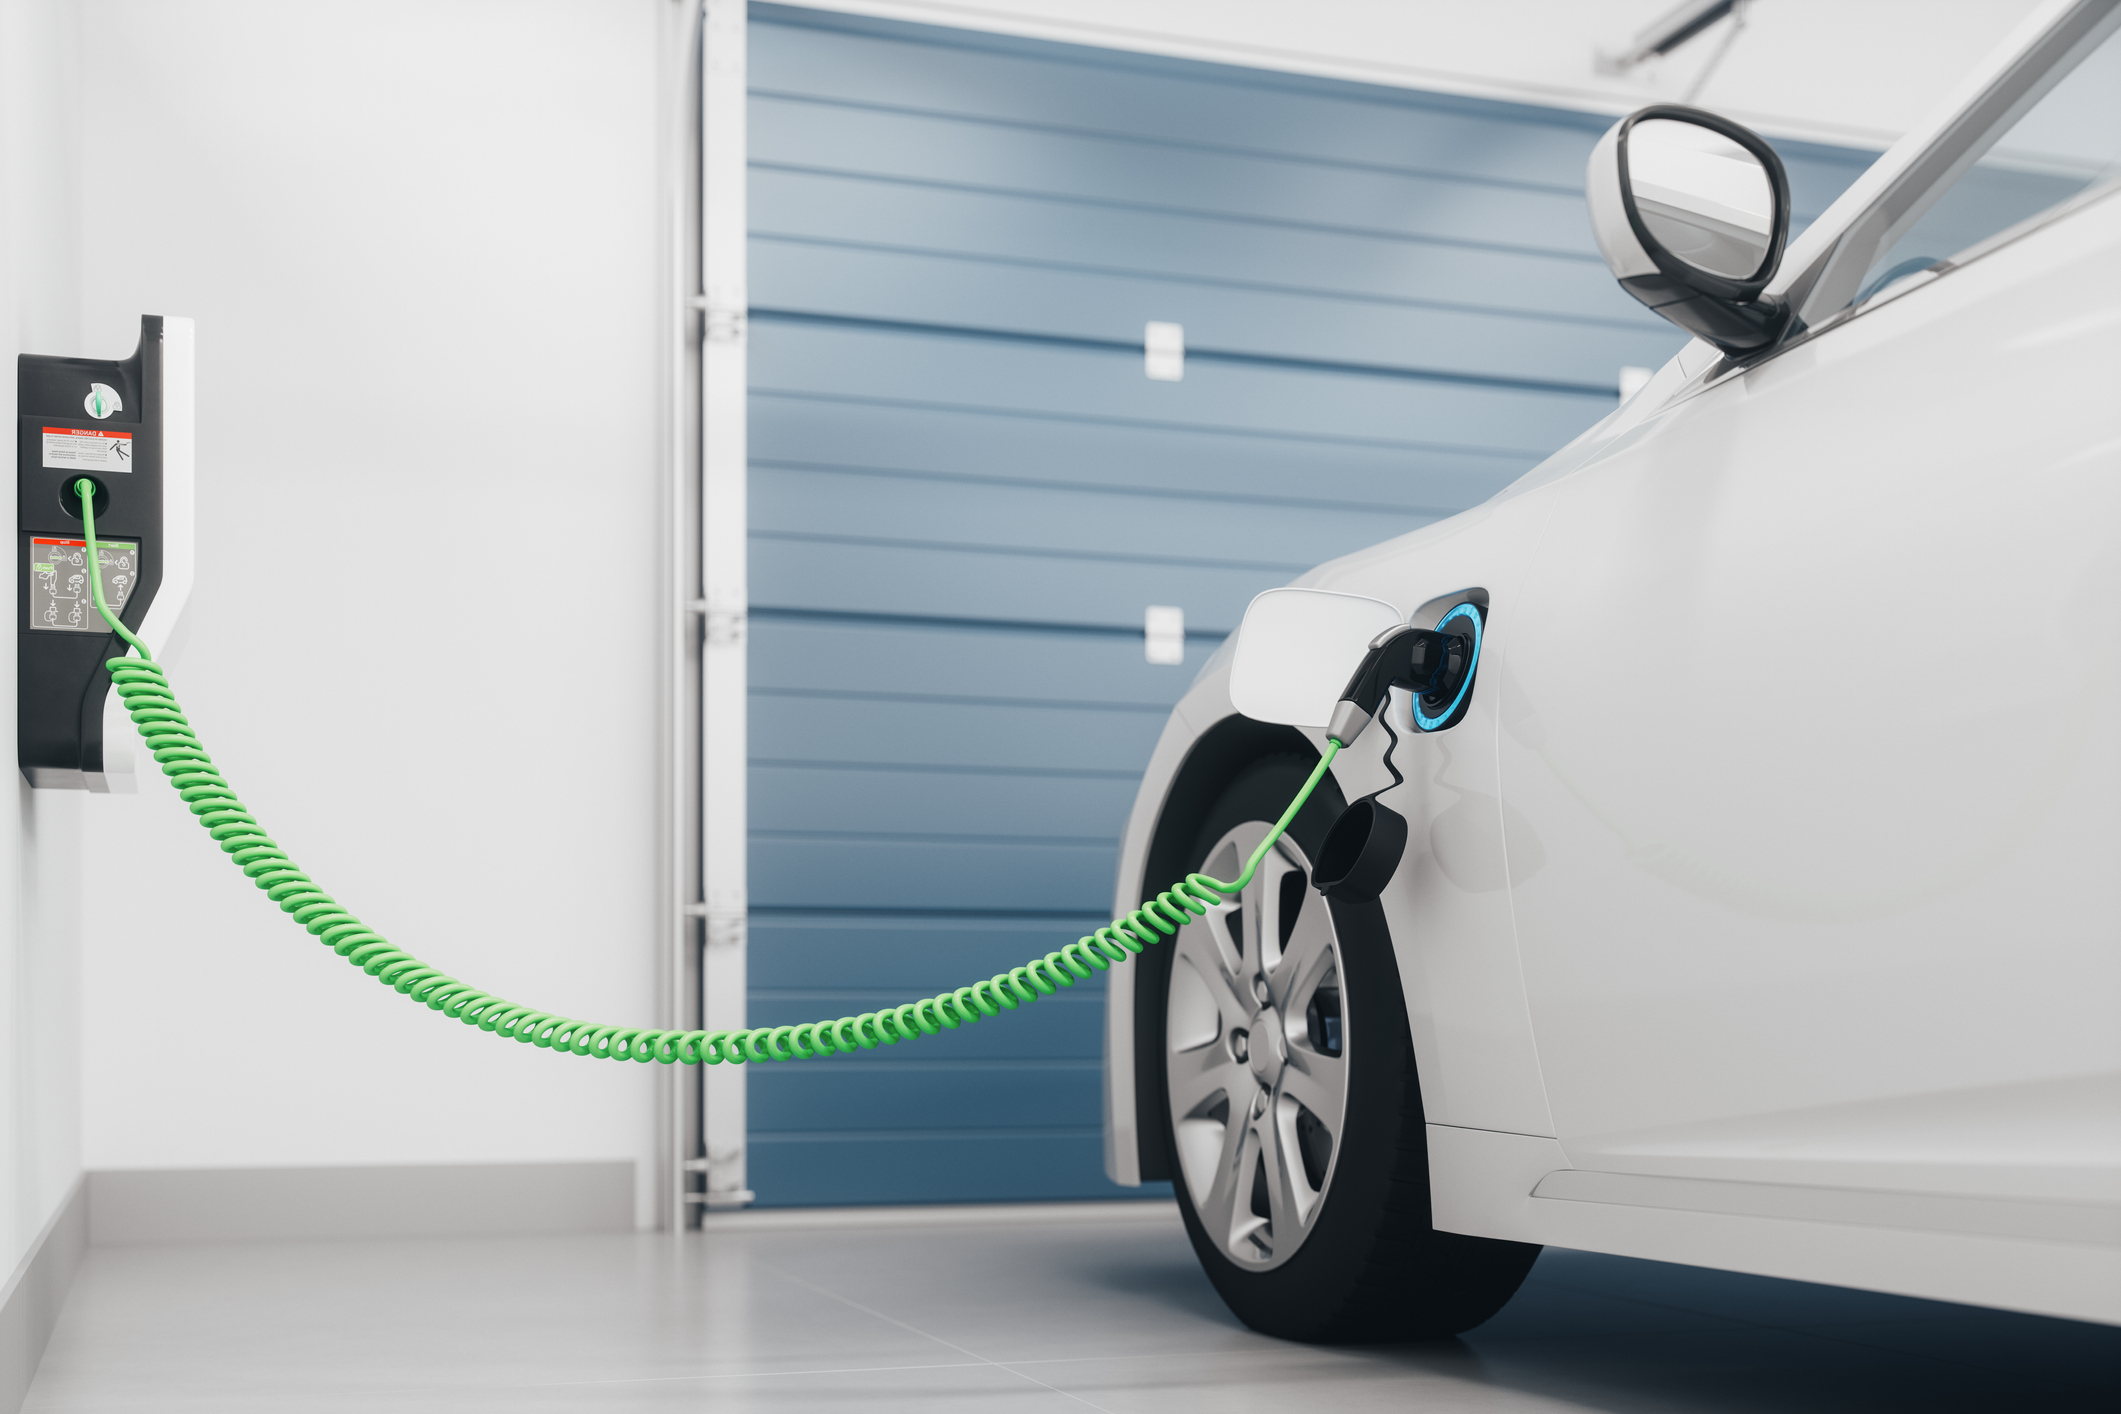 Infrastructure de recharge pour véhicules électriques (IRVE) - Niveau 2, formation expert (niveau P2)